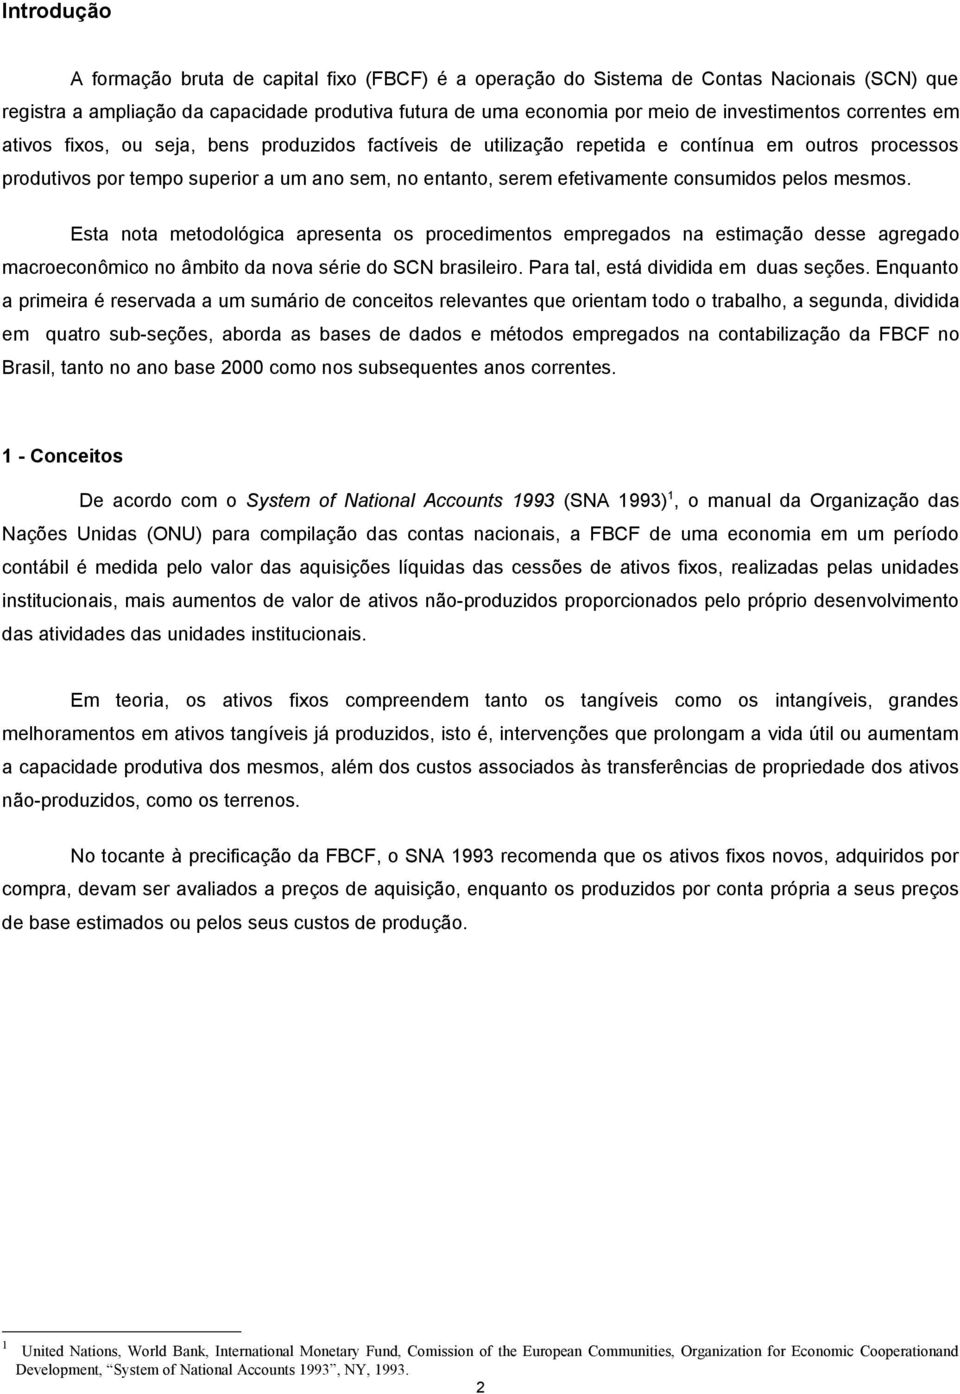 consumidos pelos mesmos. Esta nota metodológica apresenta os procedimentos empregados na estimação desse agregado macroeconômico no âmbito da nova série do SCN brasileiro.